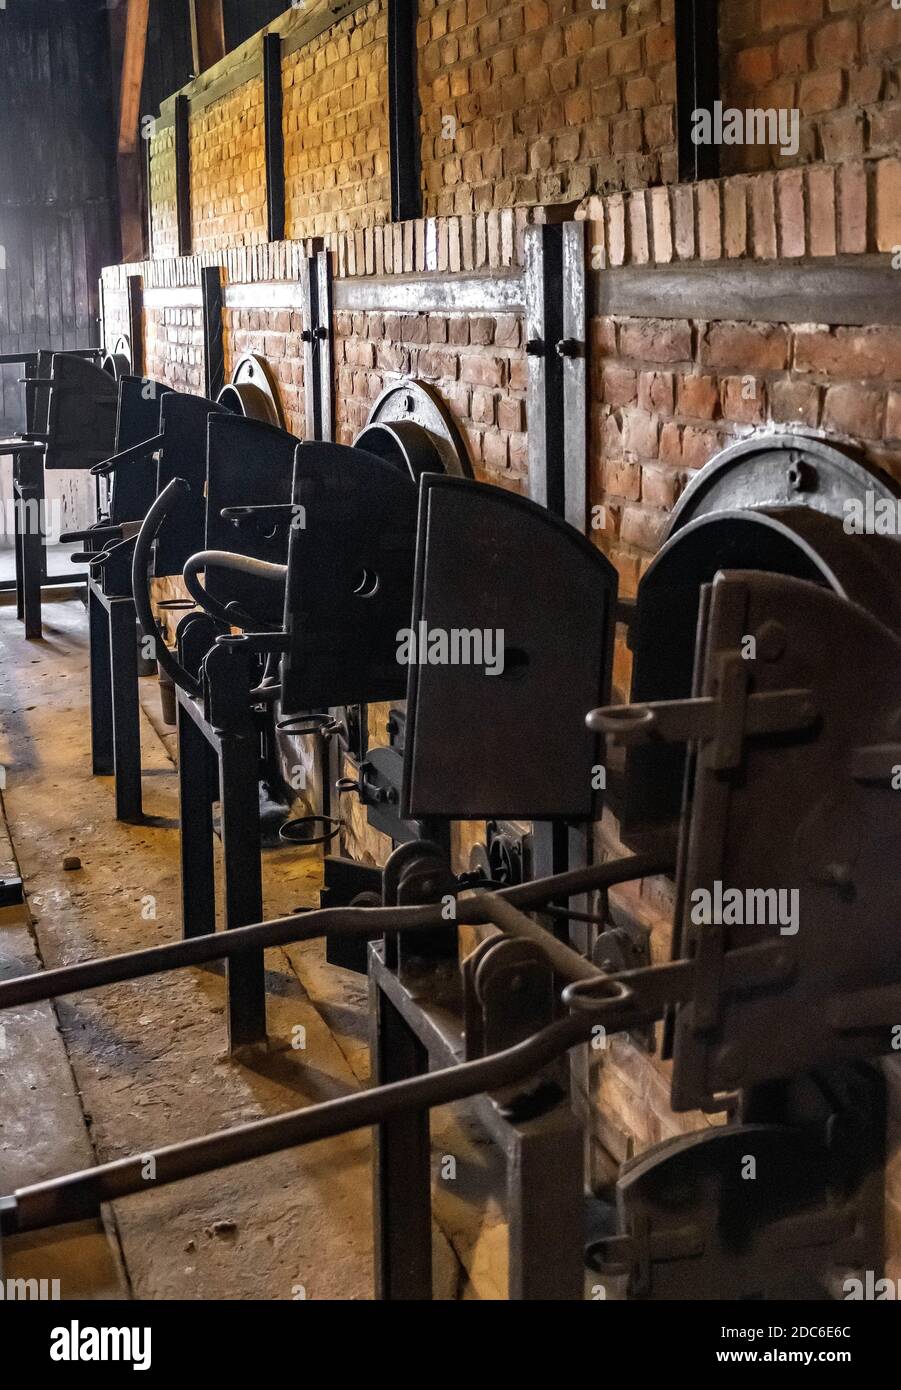 Lublin, Lubelskie / Polonia - 2019/08/17: Hornos de crematorio reconstruidos del campo de concentración y exterminio de los nazis Majdanek KL Lublin - Konzentrat Foto de stock